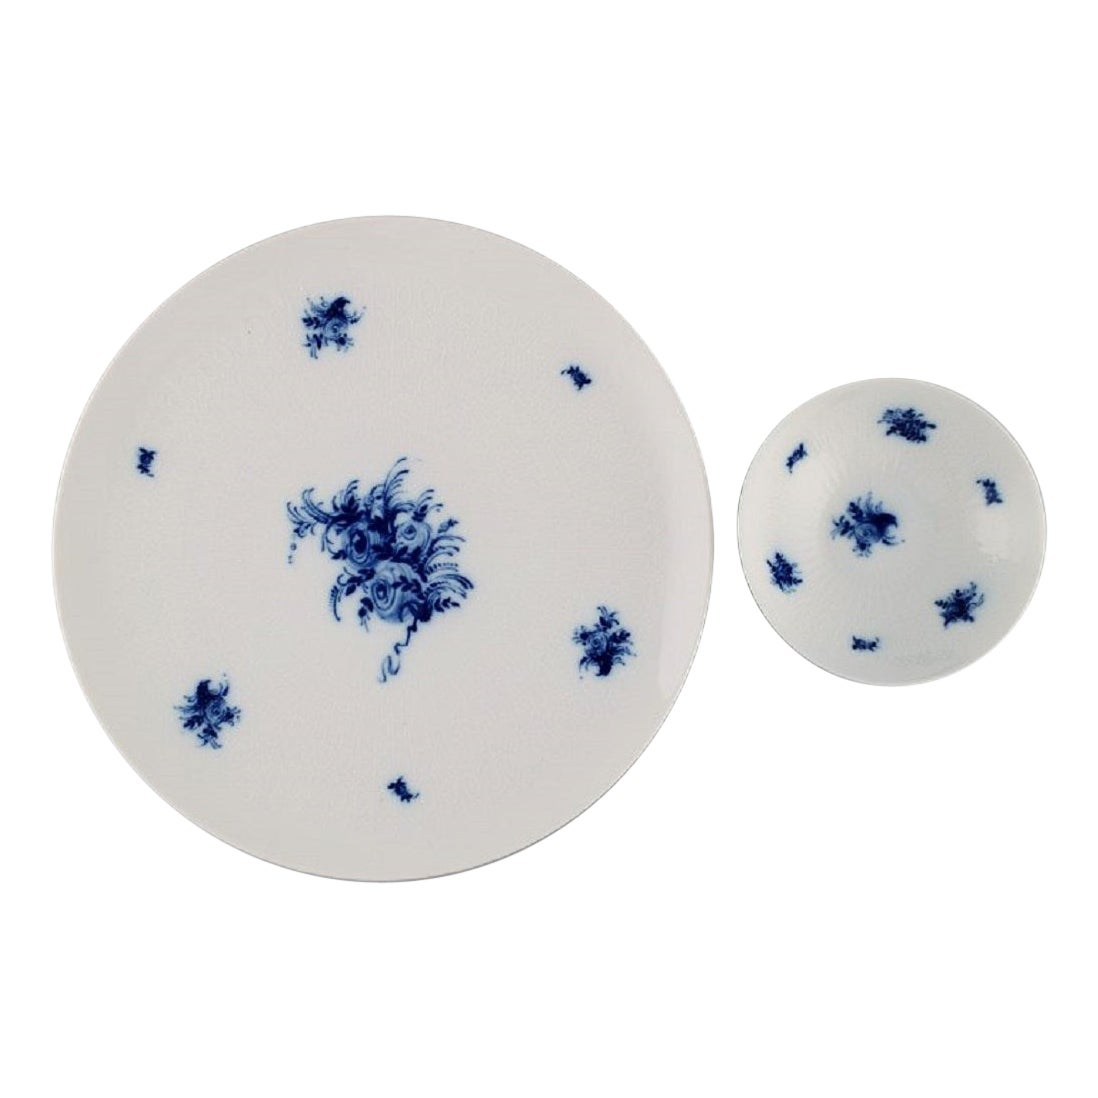 Bjørn Wiinblad for Rosenthal, Romanze Blue Flower Bowl and Large Dish, 1960s For Sale